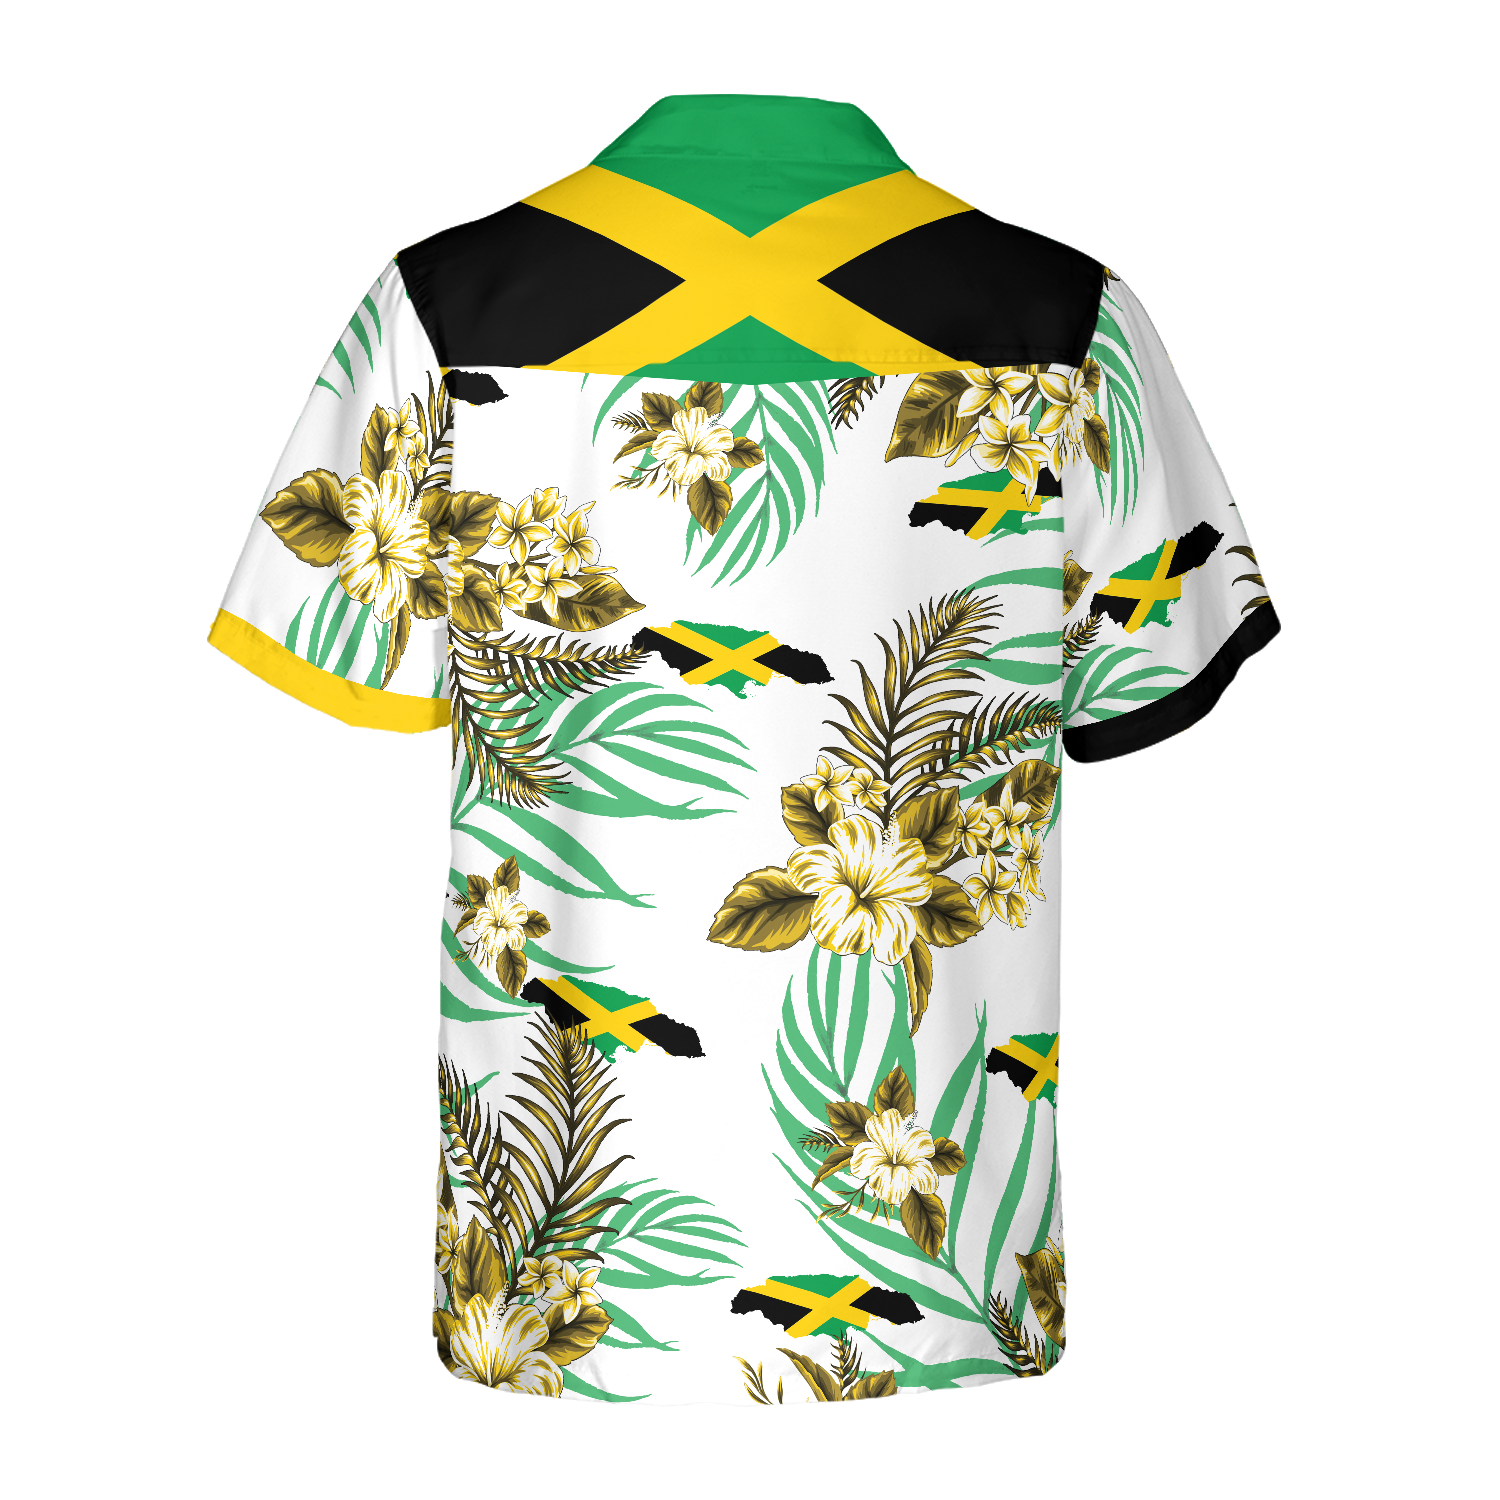 Jamaica Proud Hawaiian Shirt For Men Women Kids Adults